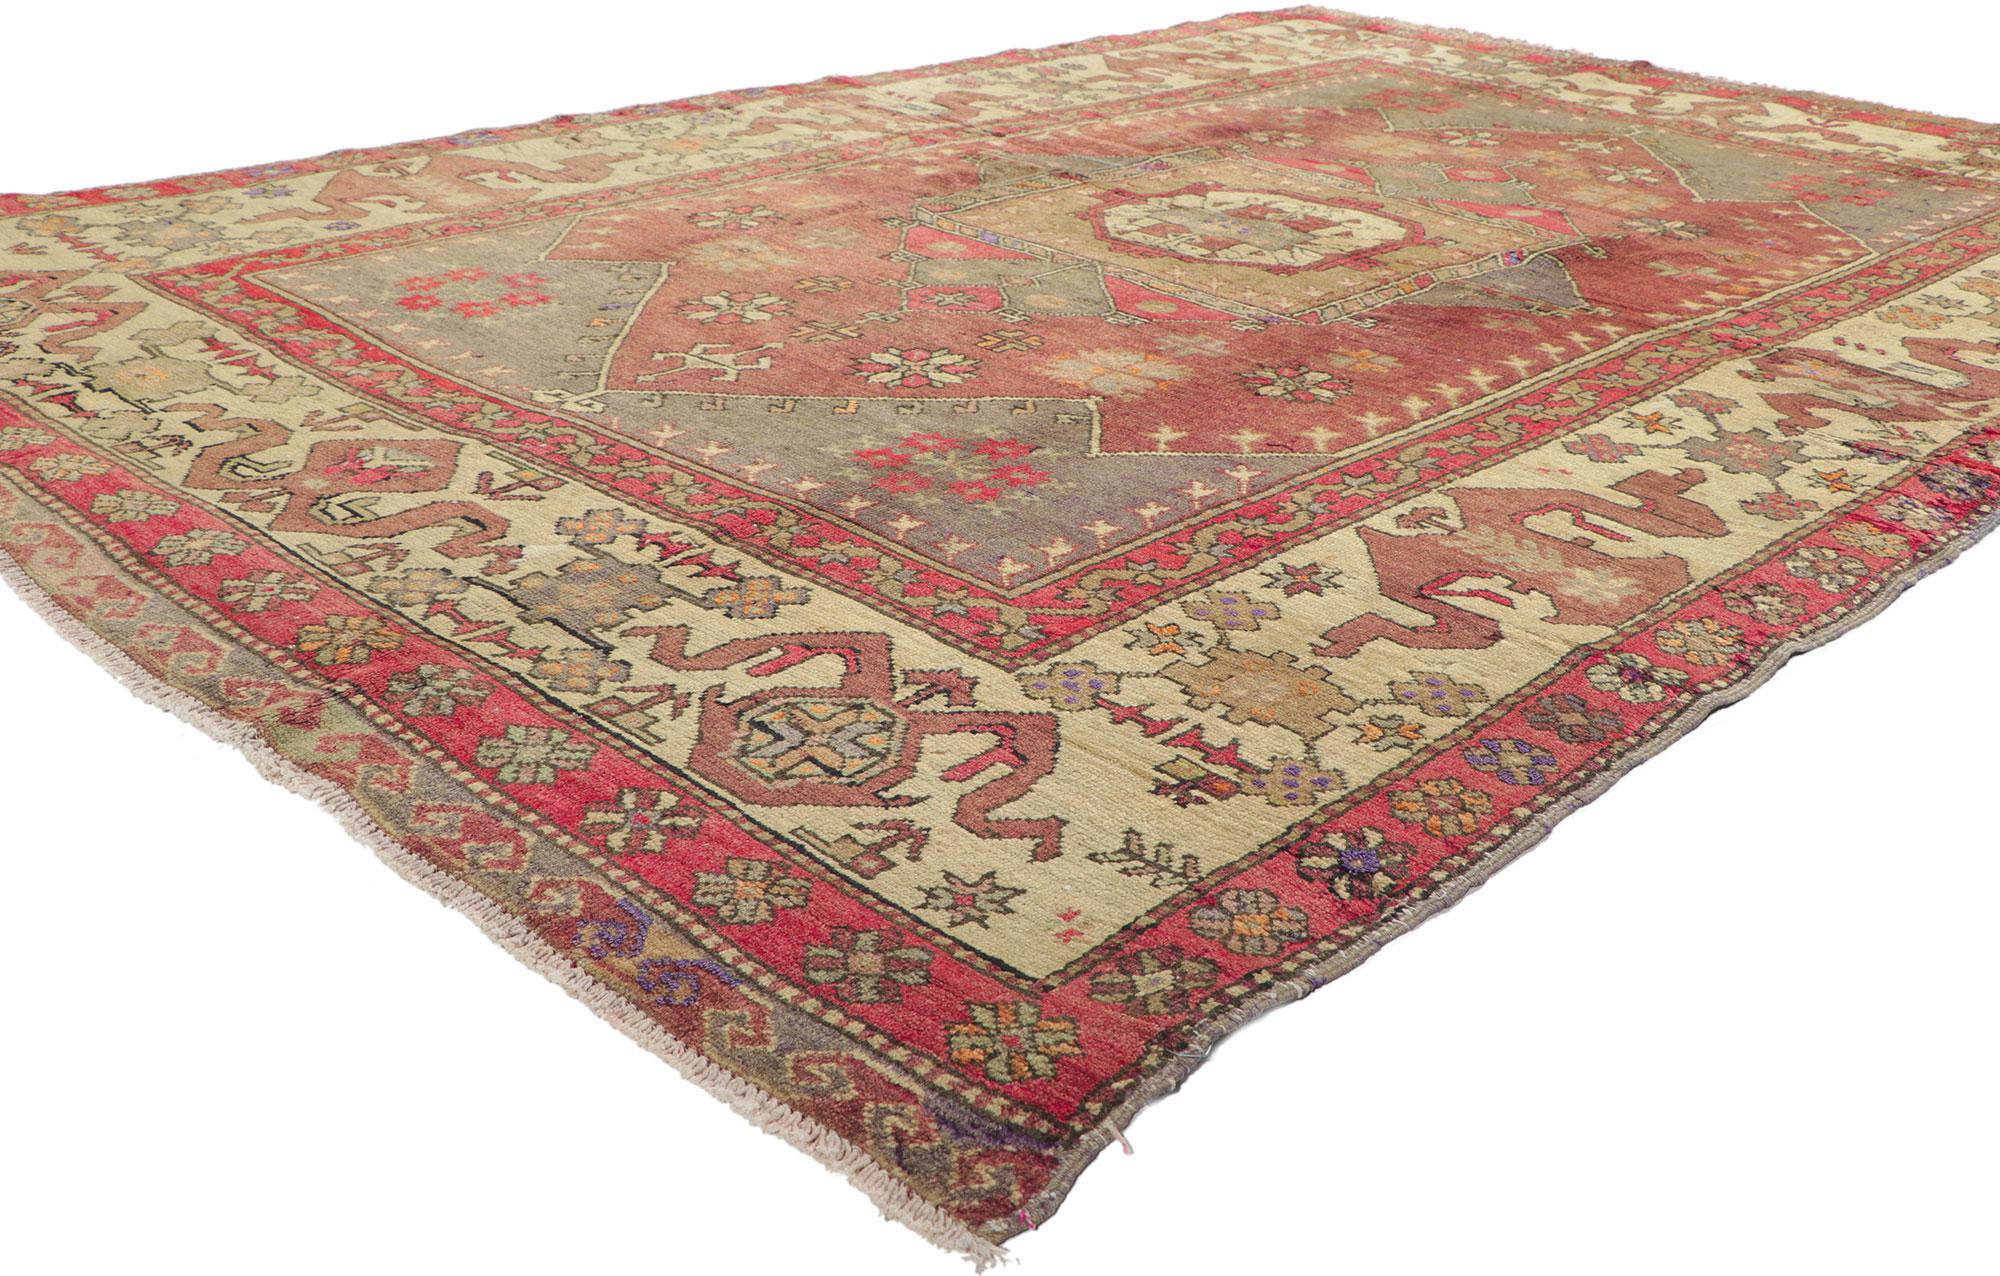 51789 Tapis Oushak turc vintage, 05'10 x 08'08.
Ce tapis Oushak turc vintage en laine tricotée à la main présente un design expressif et audacieux, ainsi que des détails et une texture incroyables. Il s'agit d'une vision captivante de la beauté du